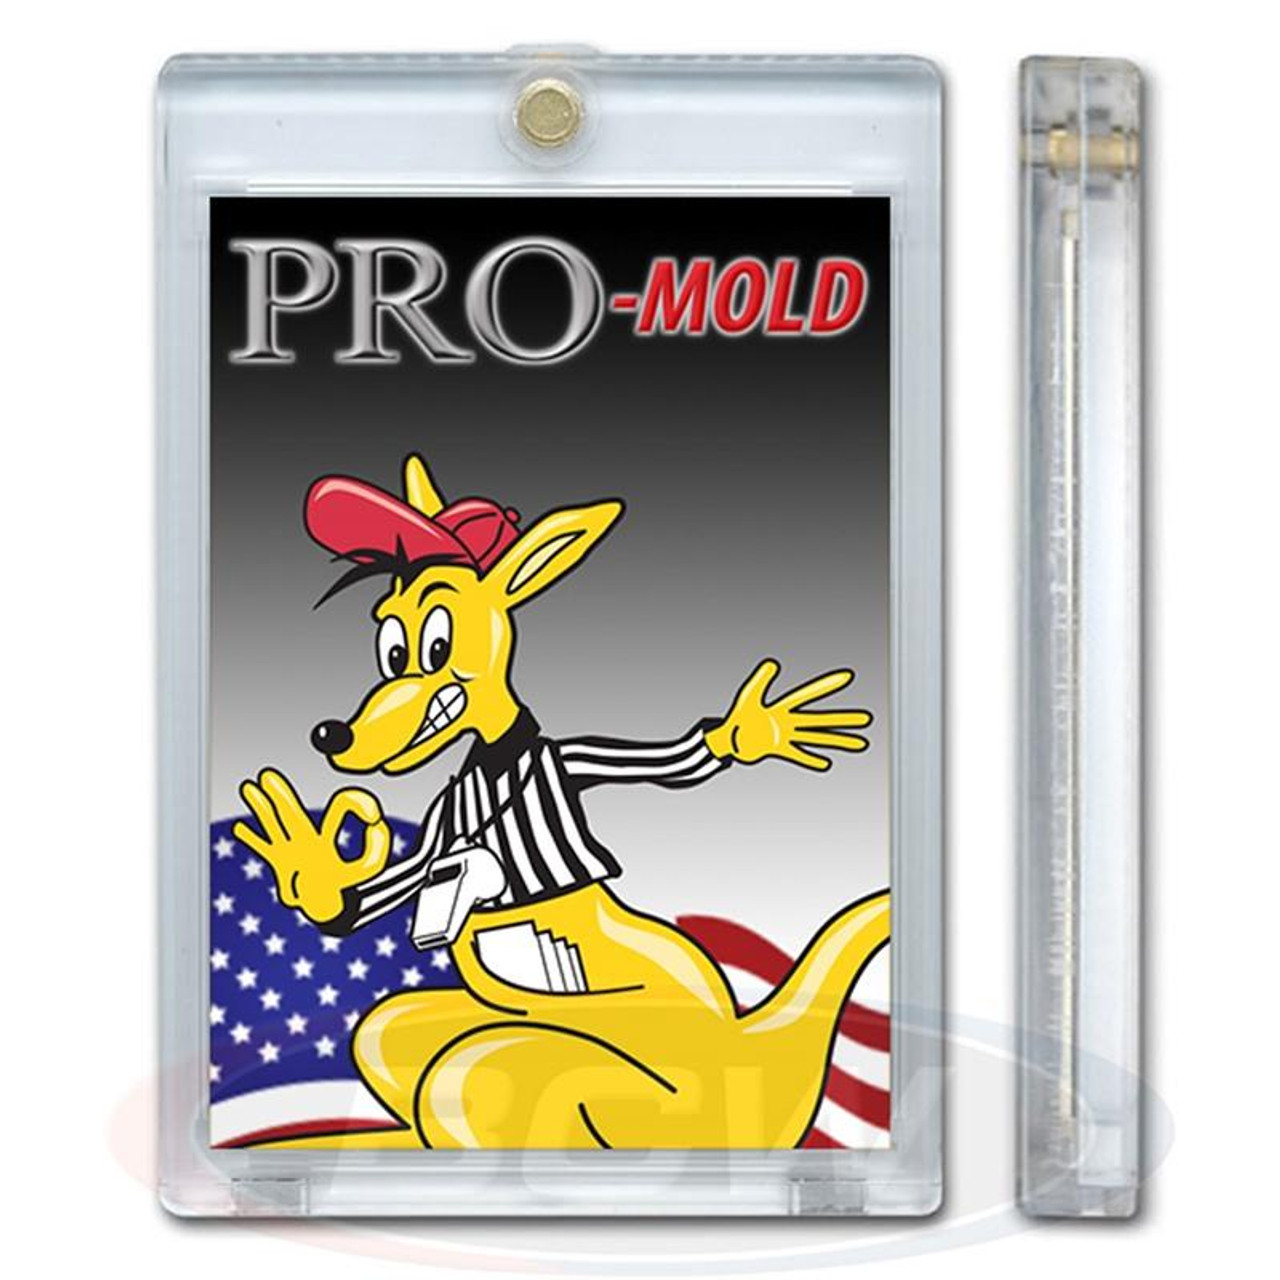 Pro-Mold Magnetic Card Holder 120pt